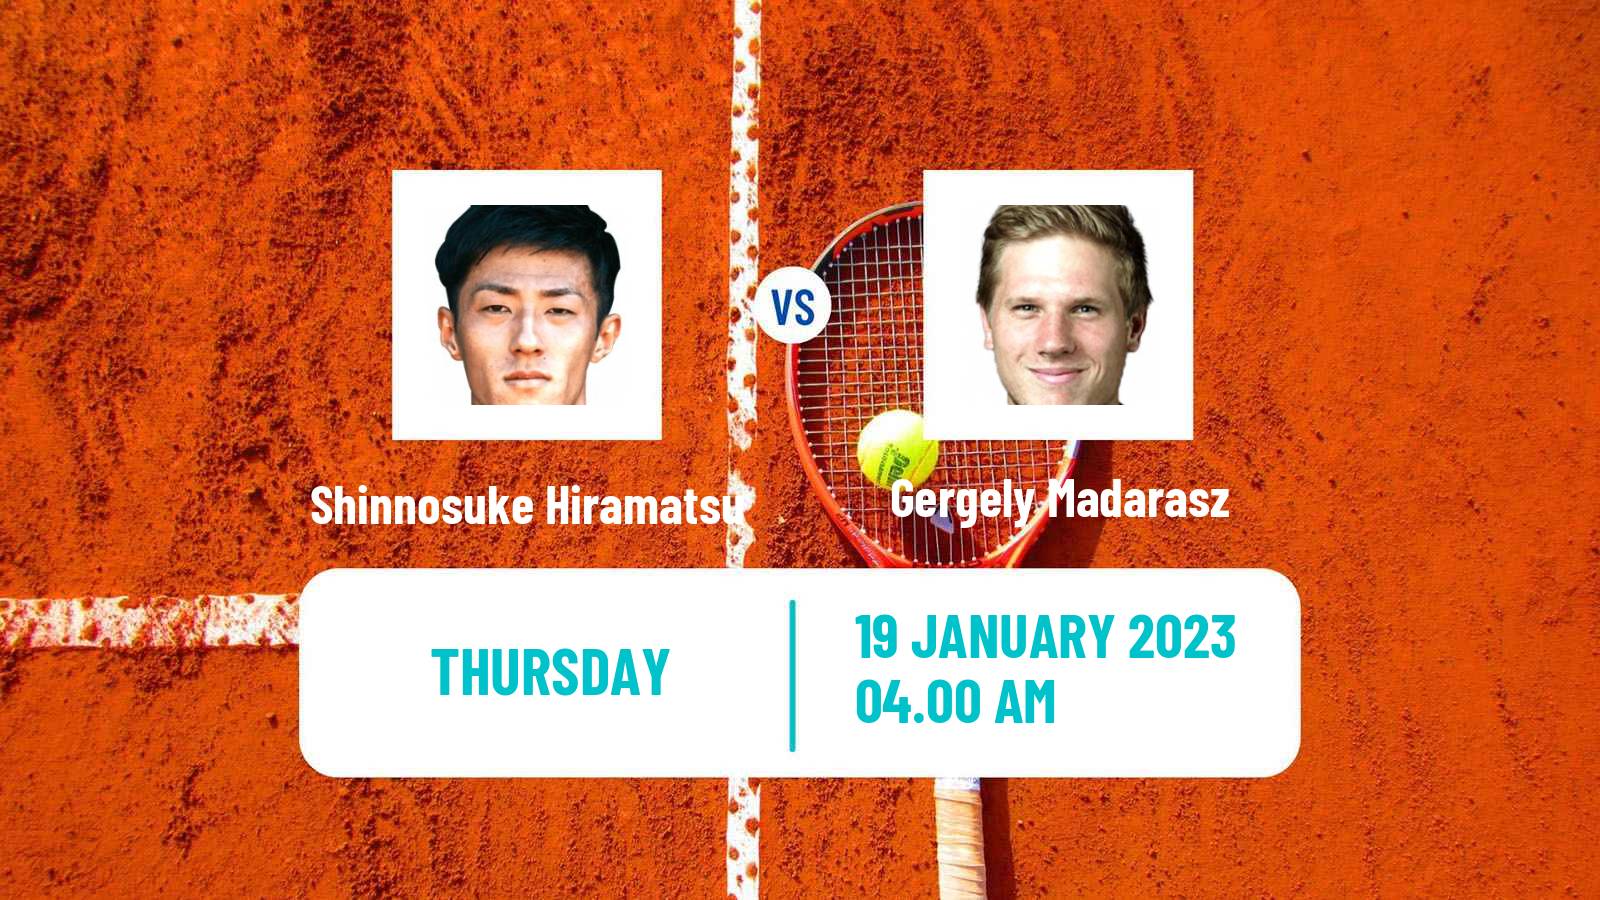 Tennis ITF Tournaments Shinnosuke Hiramatsu - Gergely Madarasz